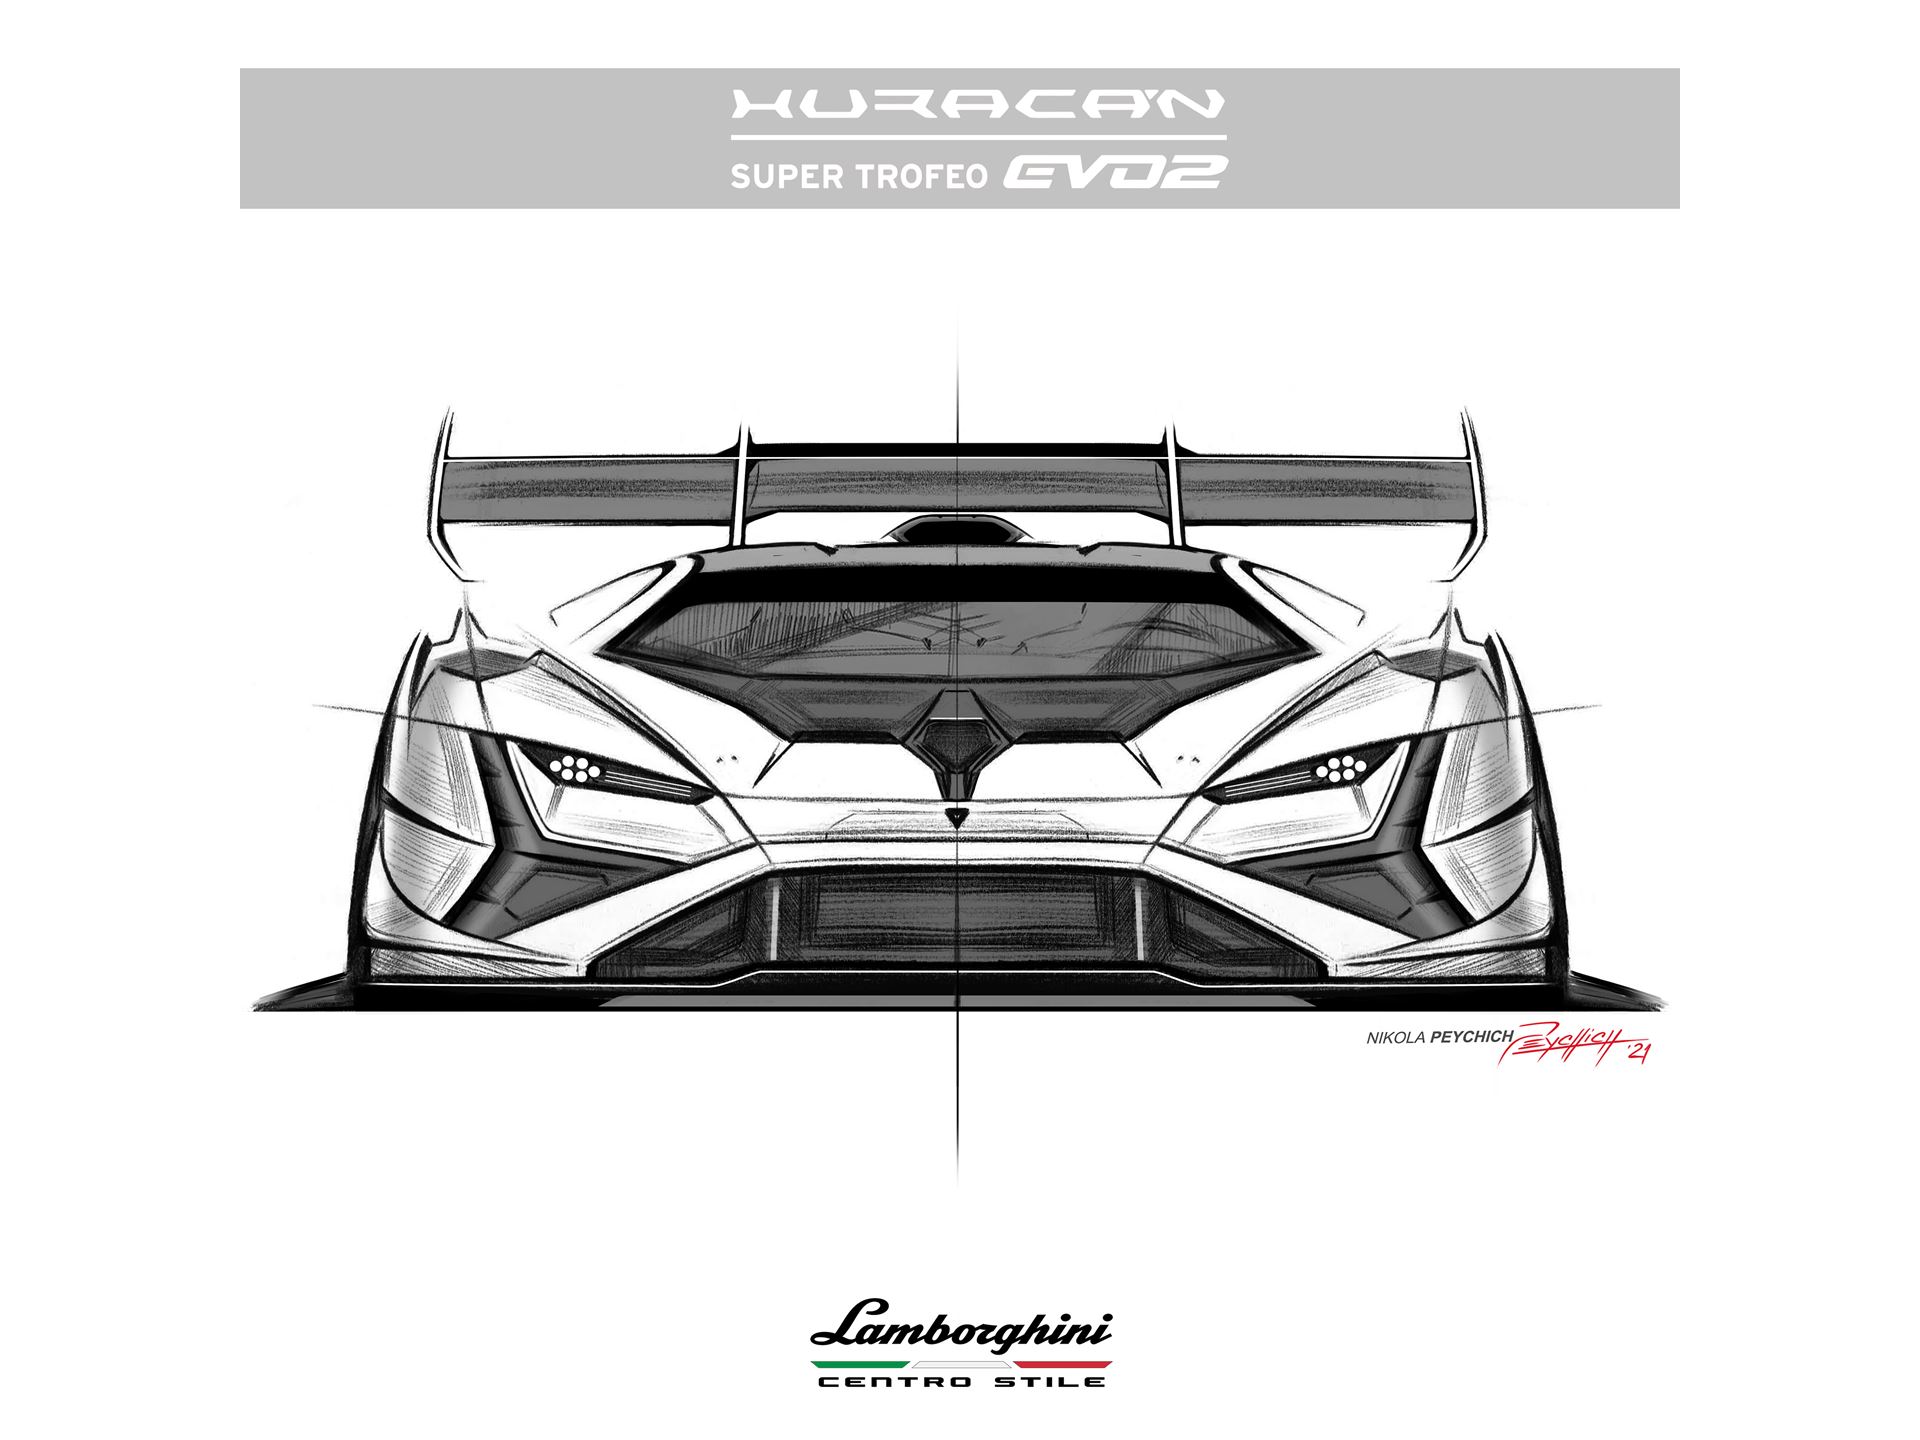 Lamborghini Huracán Super Trofeo EVO2 - Centro Stile - Sketches